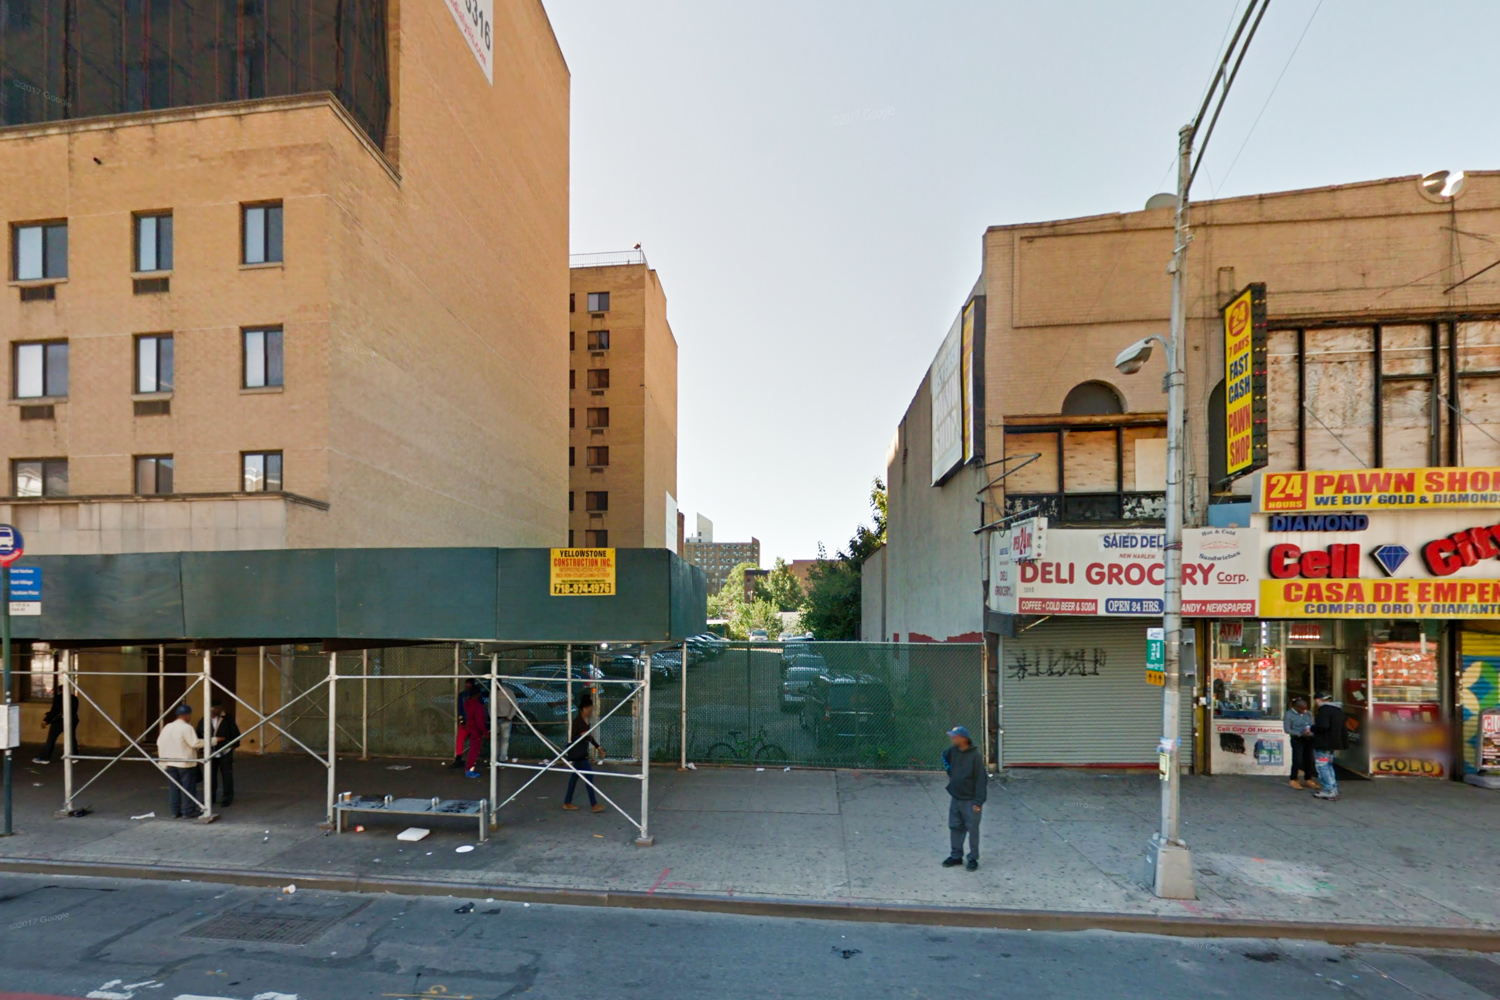 110 East 125 Street, via Google Maps